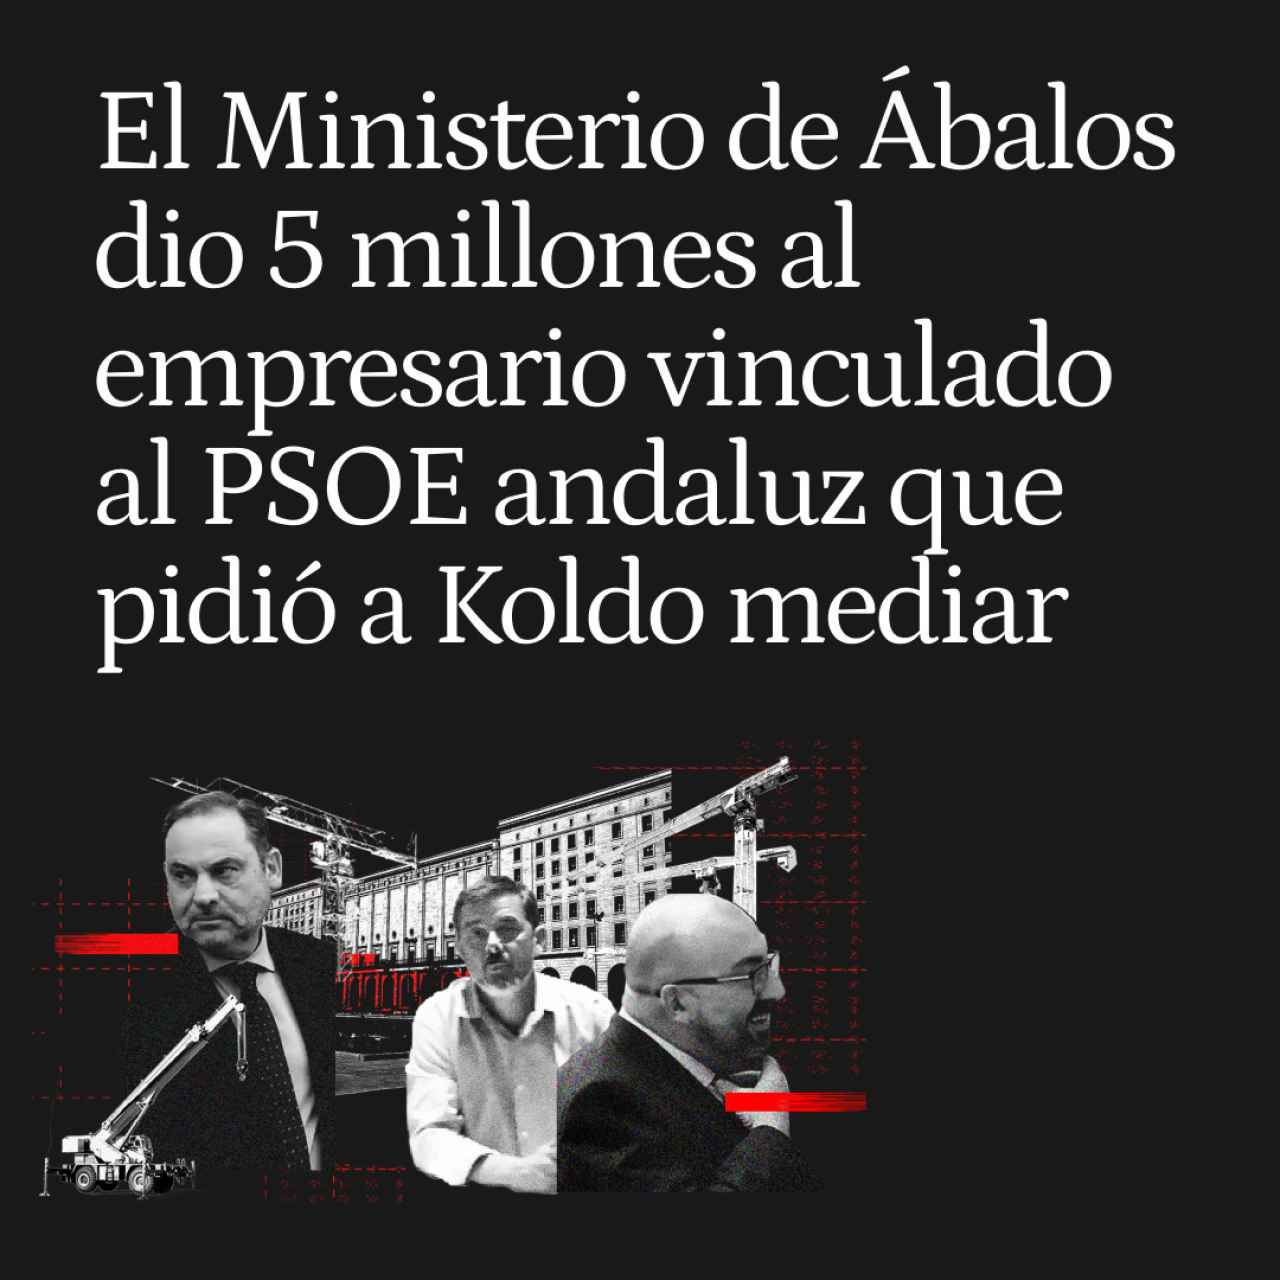 El Ministerio de Ábalos dio 5 millones al empresario vinculado al PSOE andaluz que pidió a Koldo mediar